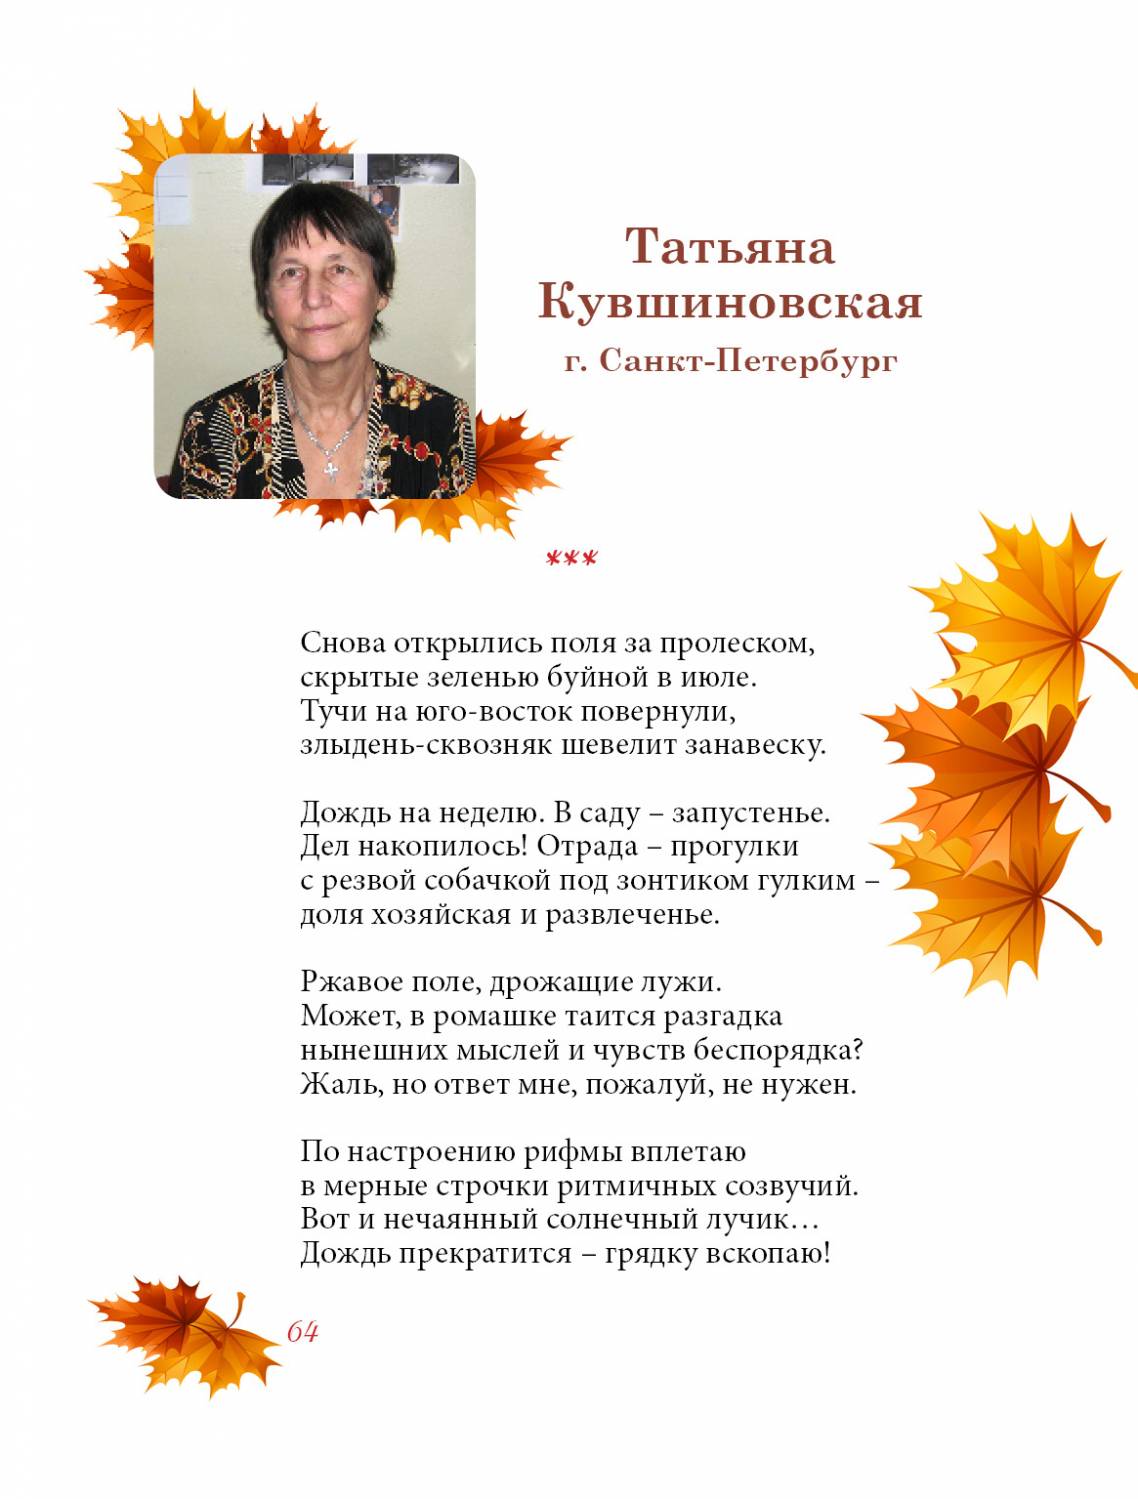 Кувшиновская Татьяна